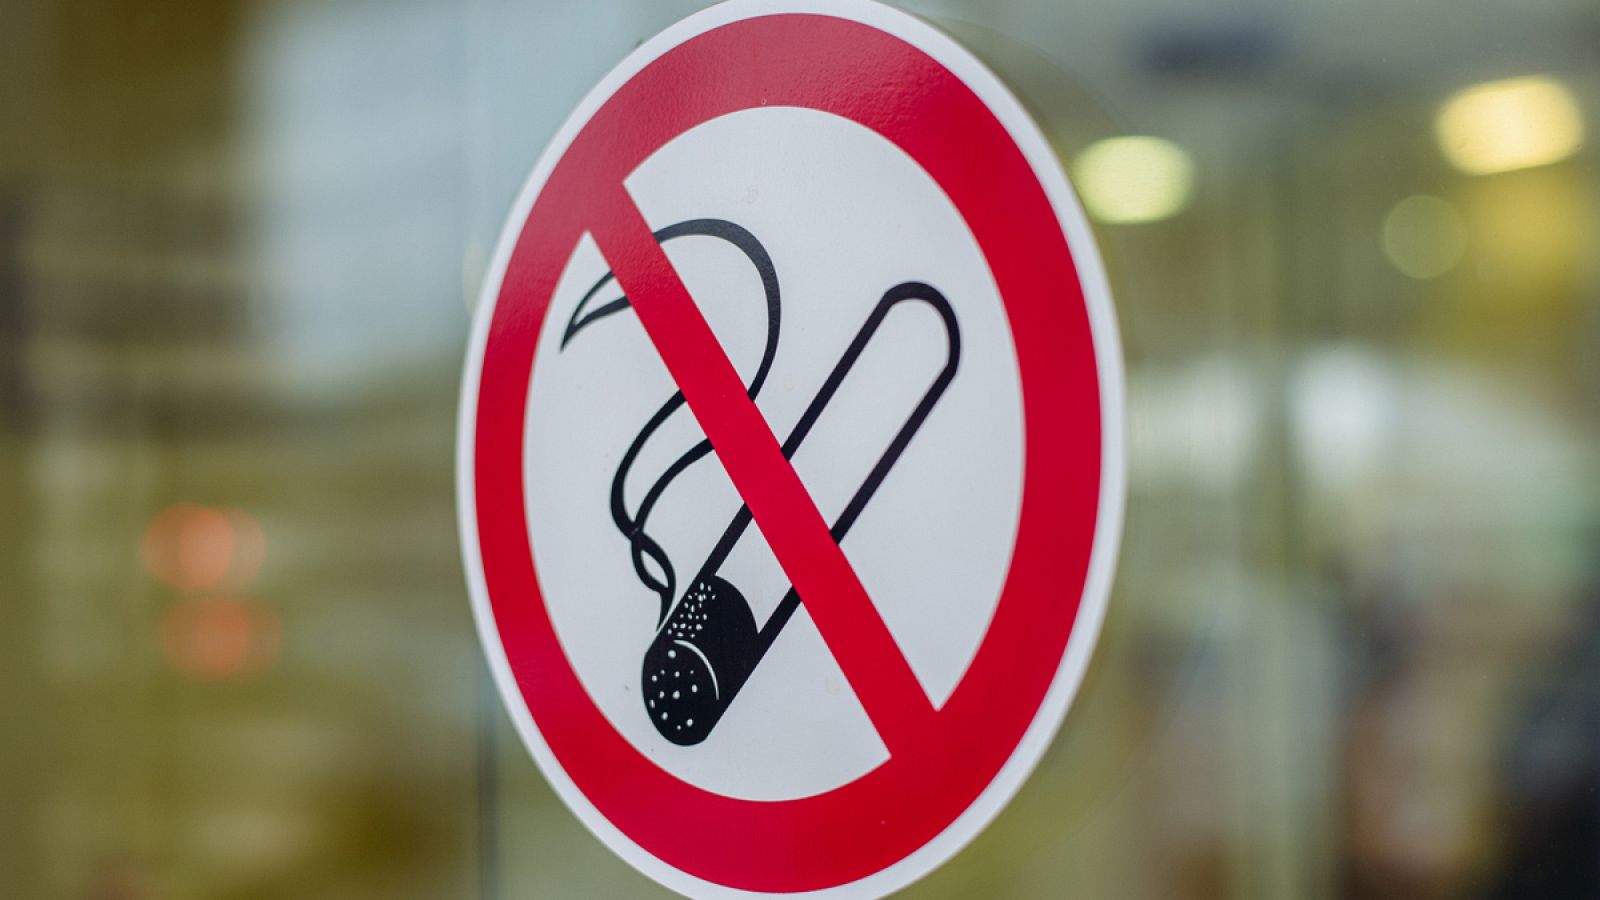 Los espacios libres de tabaco no garantizarían la ausencia de sus sustancias tóxicas.